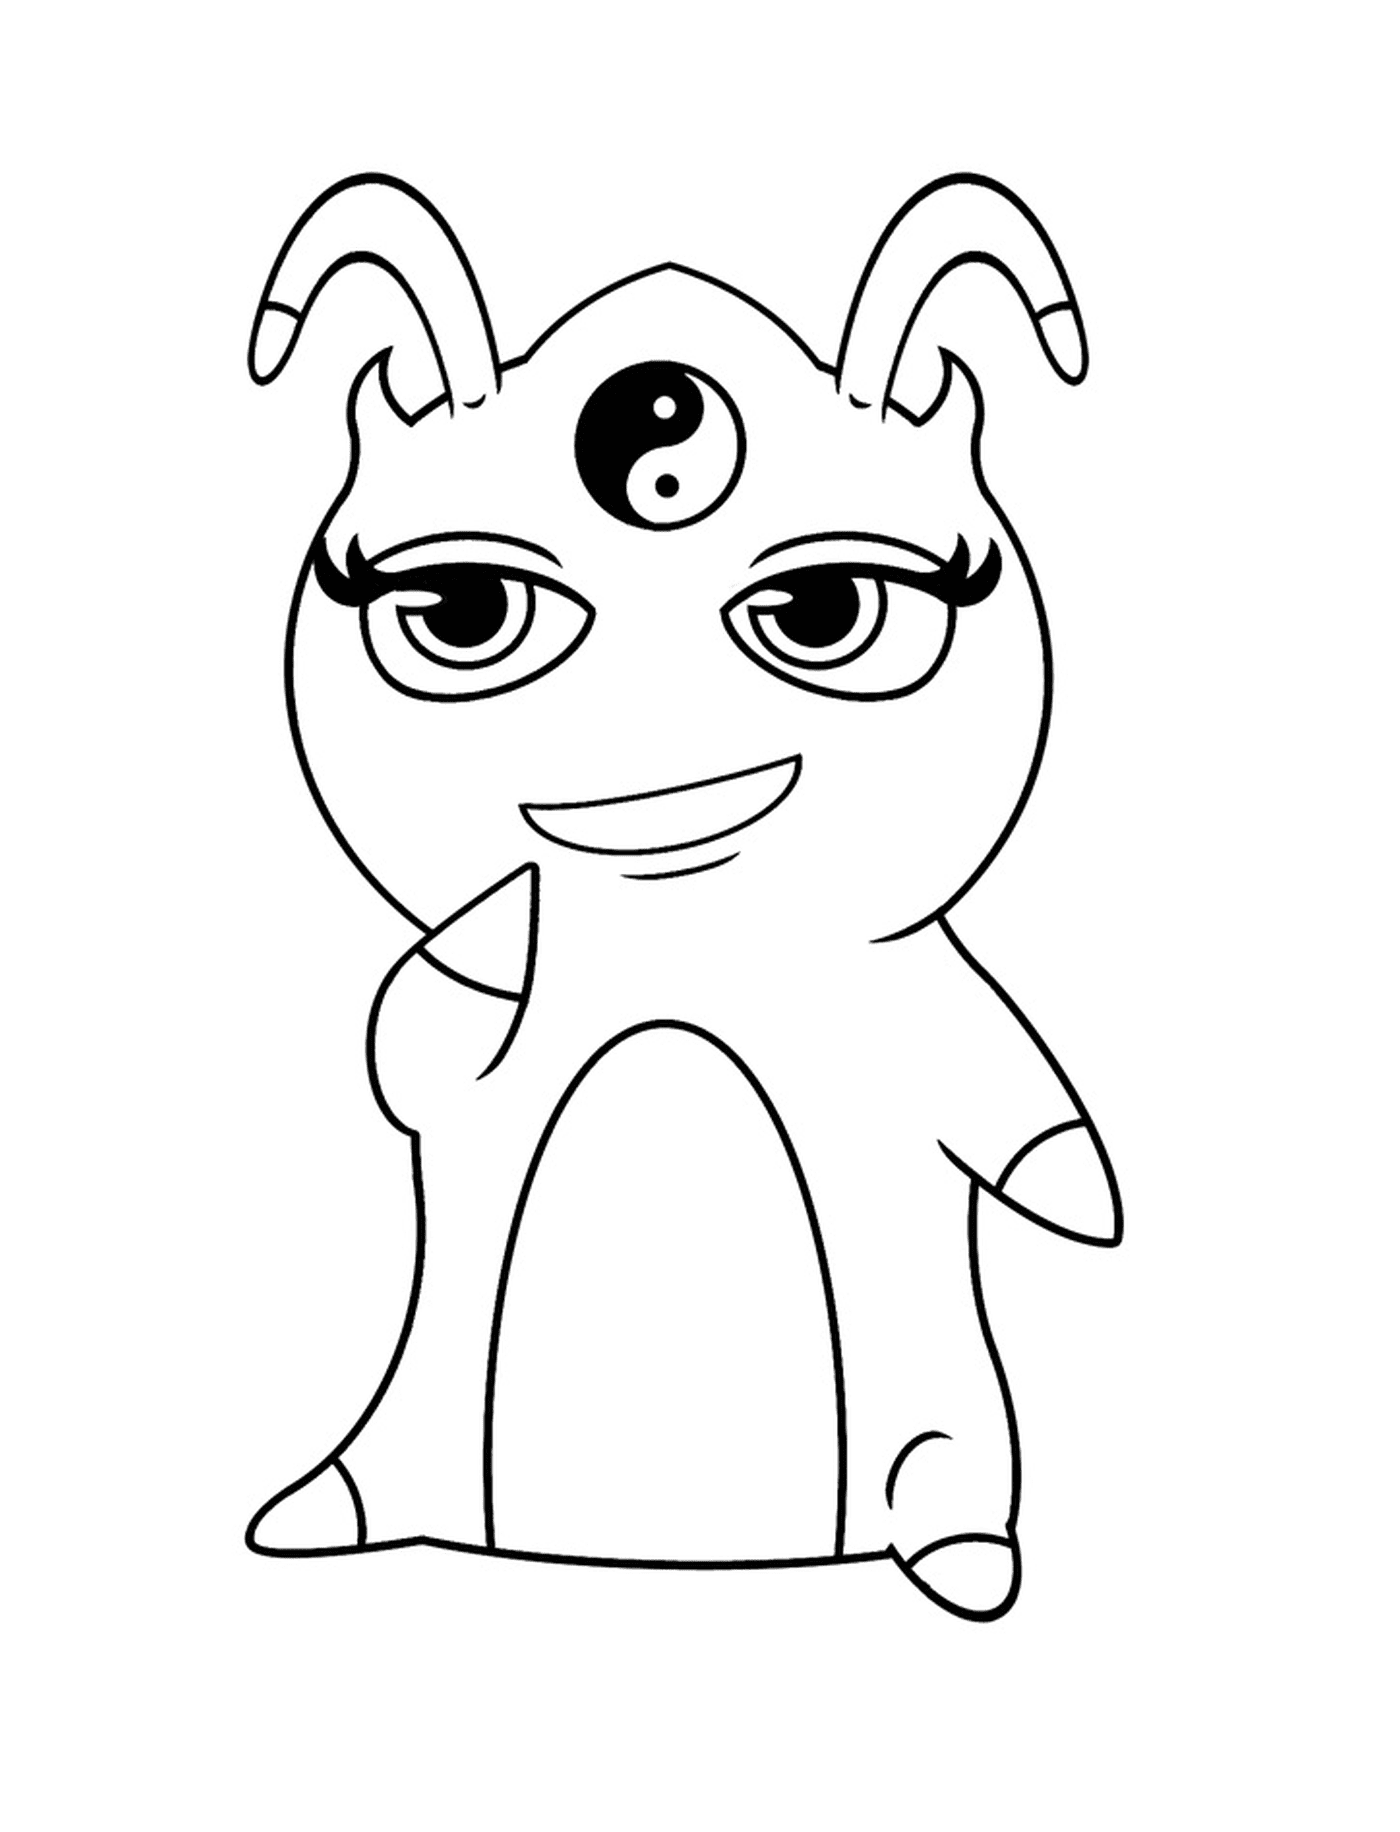  personagem de desenho animado com um terceiro olho Harmonia 